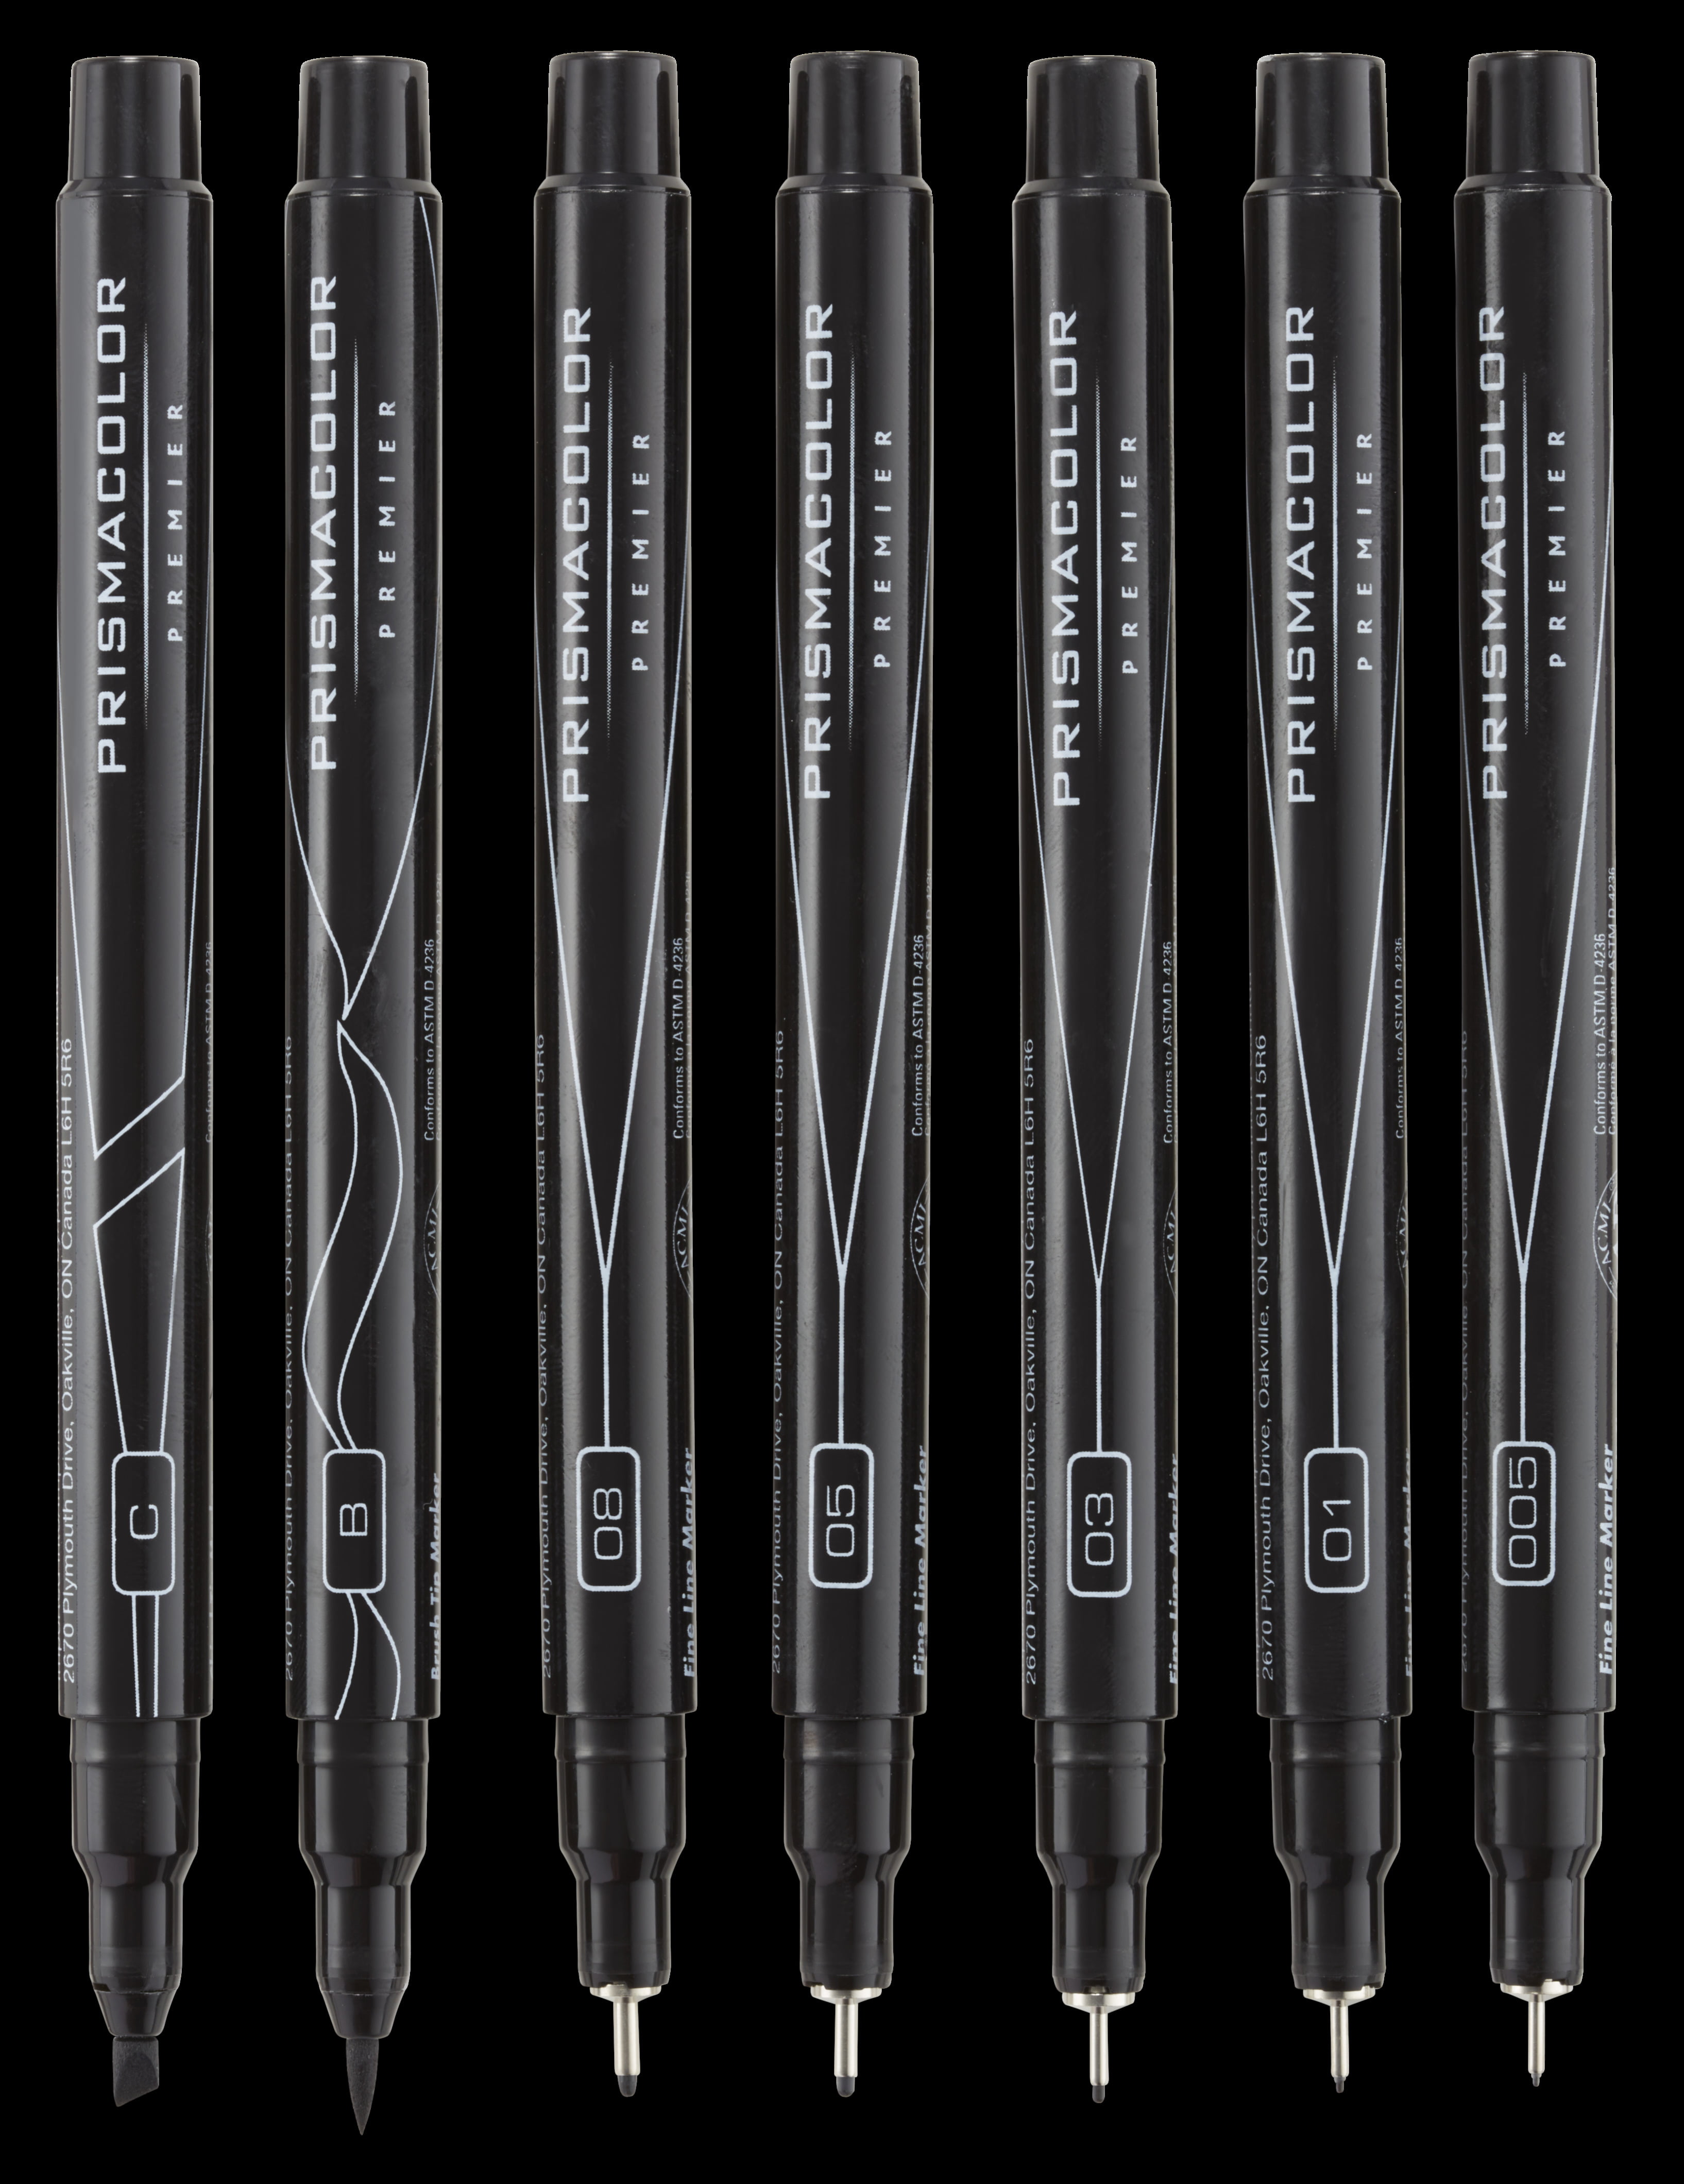 4 Prismacolor Premier Black Color Pens Markers Fine Tips 005, 05, Brush Tip  & Chisel Tip. Drawing, Blending, Shading, Rendering 